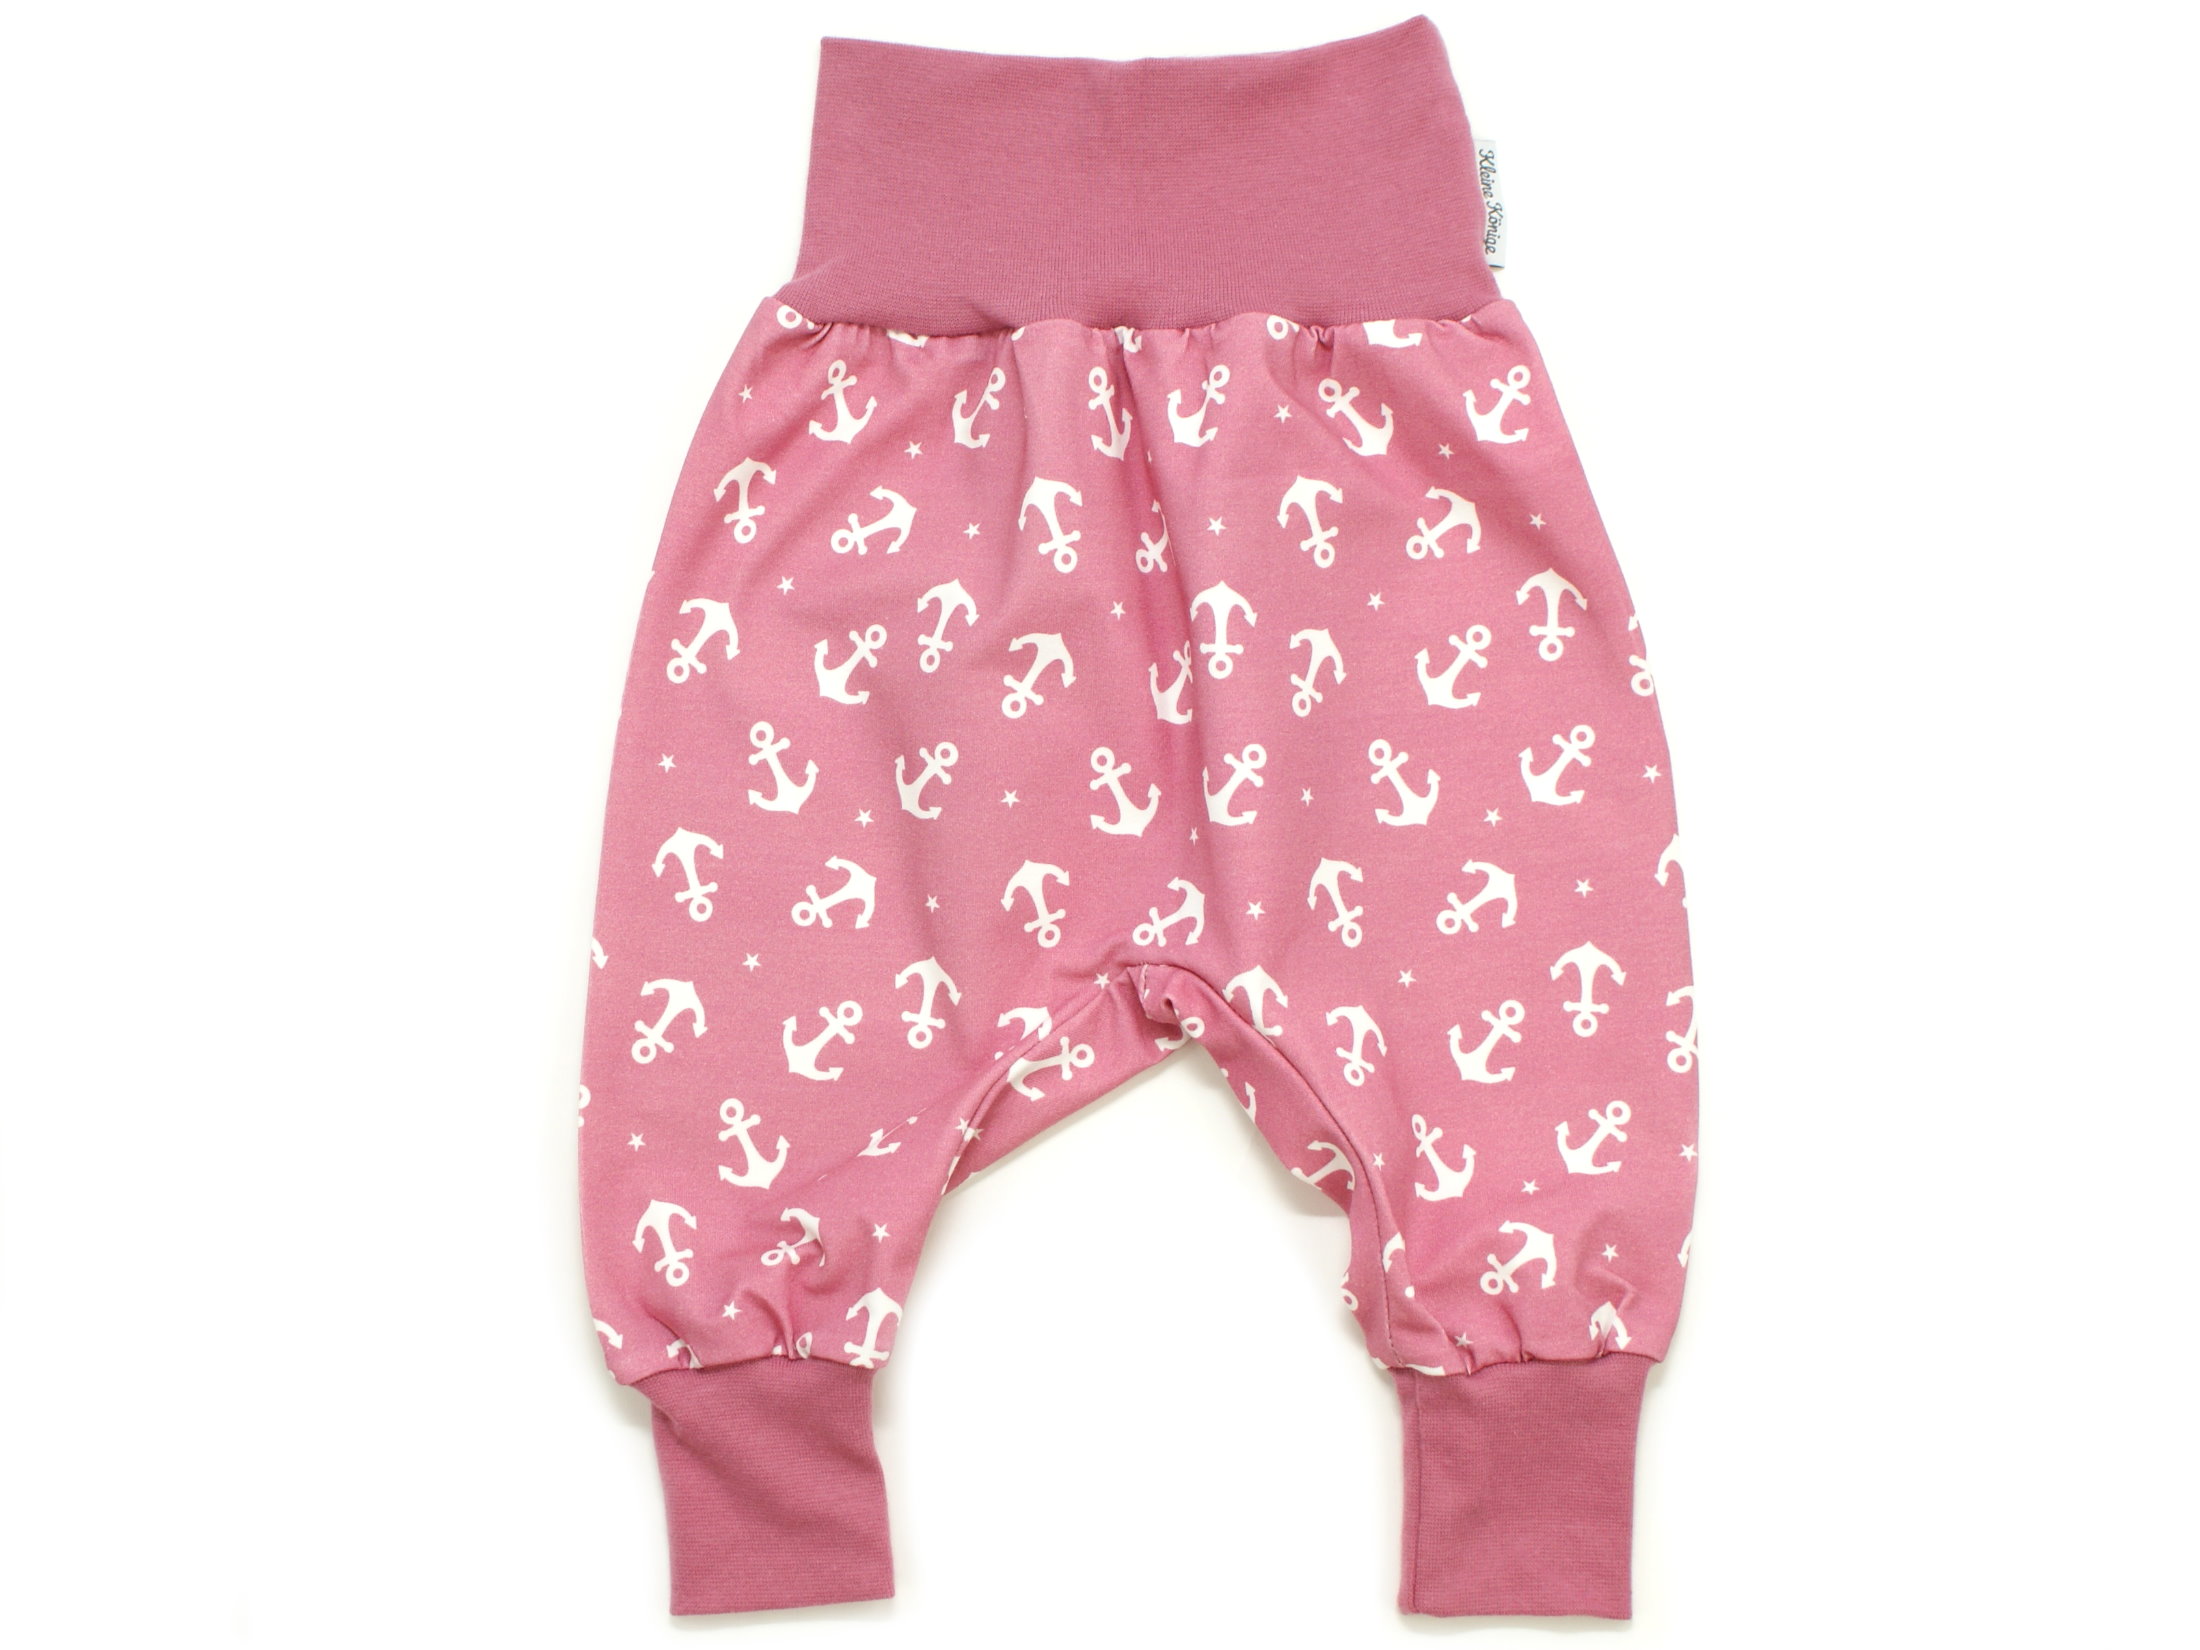 Kleine Könige Pumphose Baby Sweathose Mädchen · Modell Streifen Kreuz und quer rosa grau · Ökotex 100 Zertifiziert · Größen 50-164